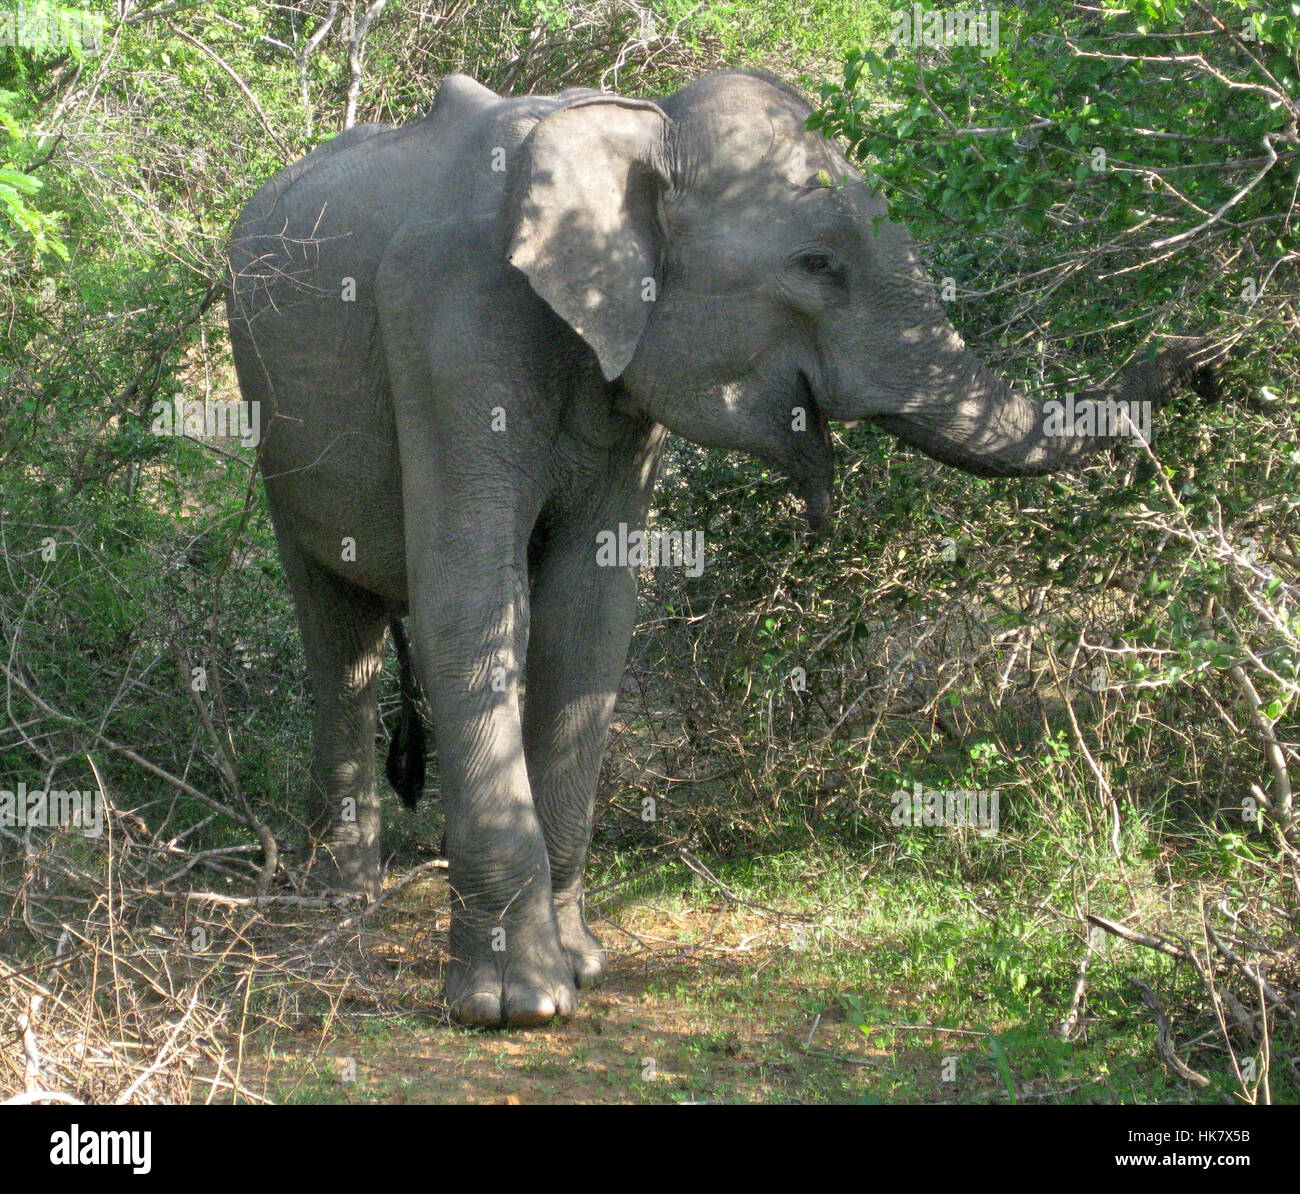 Un elefante salvaje de Sri Lanka (Elephas maximus maximus) una de las tres subespecies reconocidas del elefante asiático - fotografiado en el medio silvestre en Sri Lanka Foto de stock